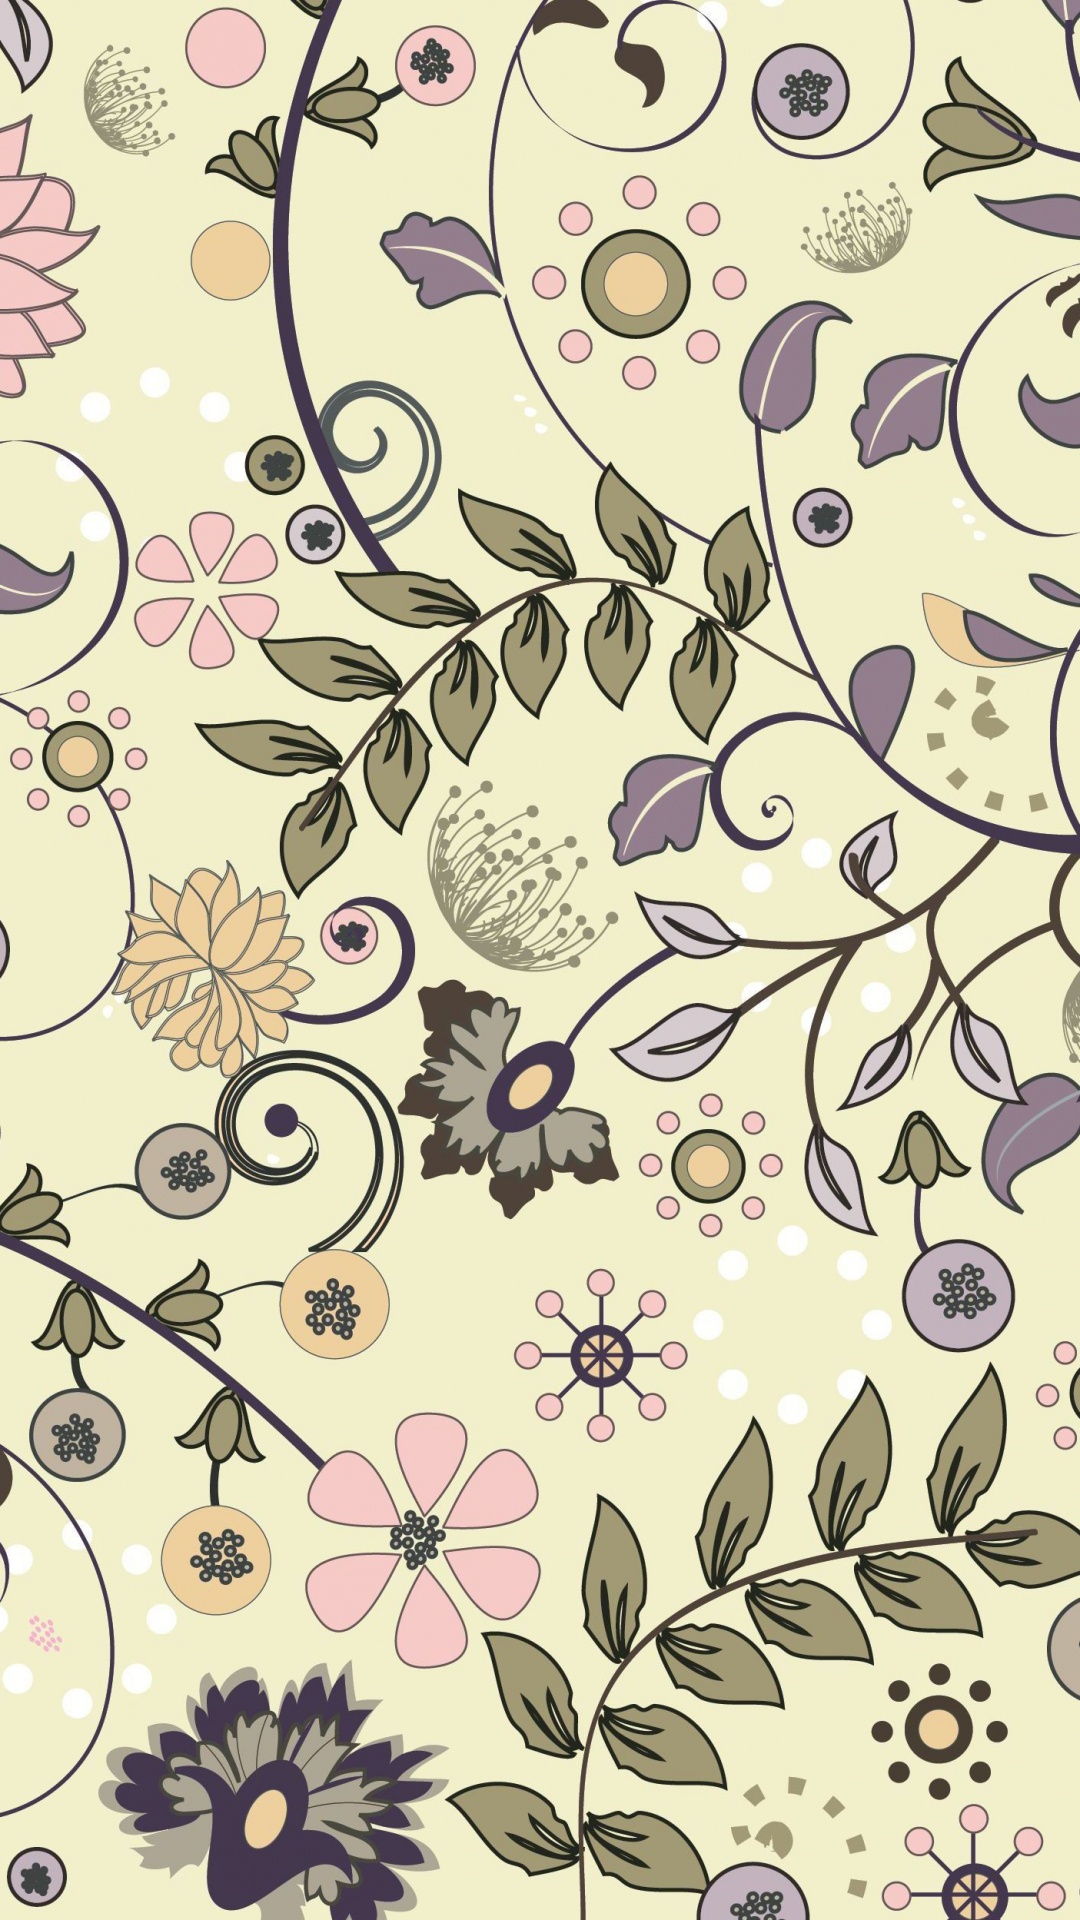 Textile Floral Blanc et Noir. Wallpaper in 1080x1920 Resolution